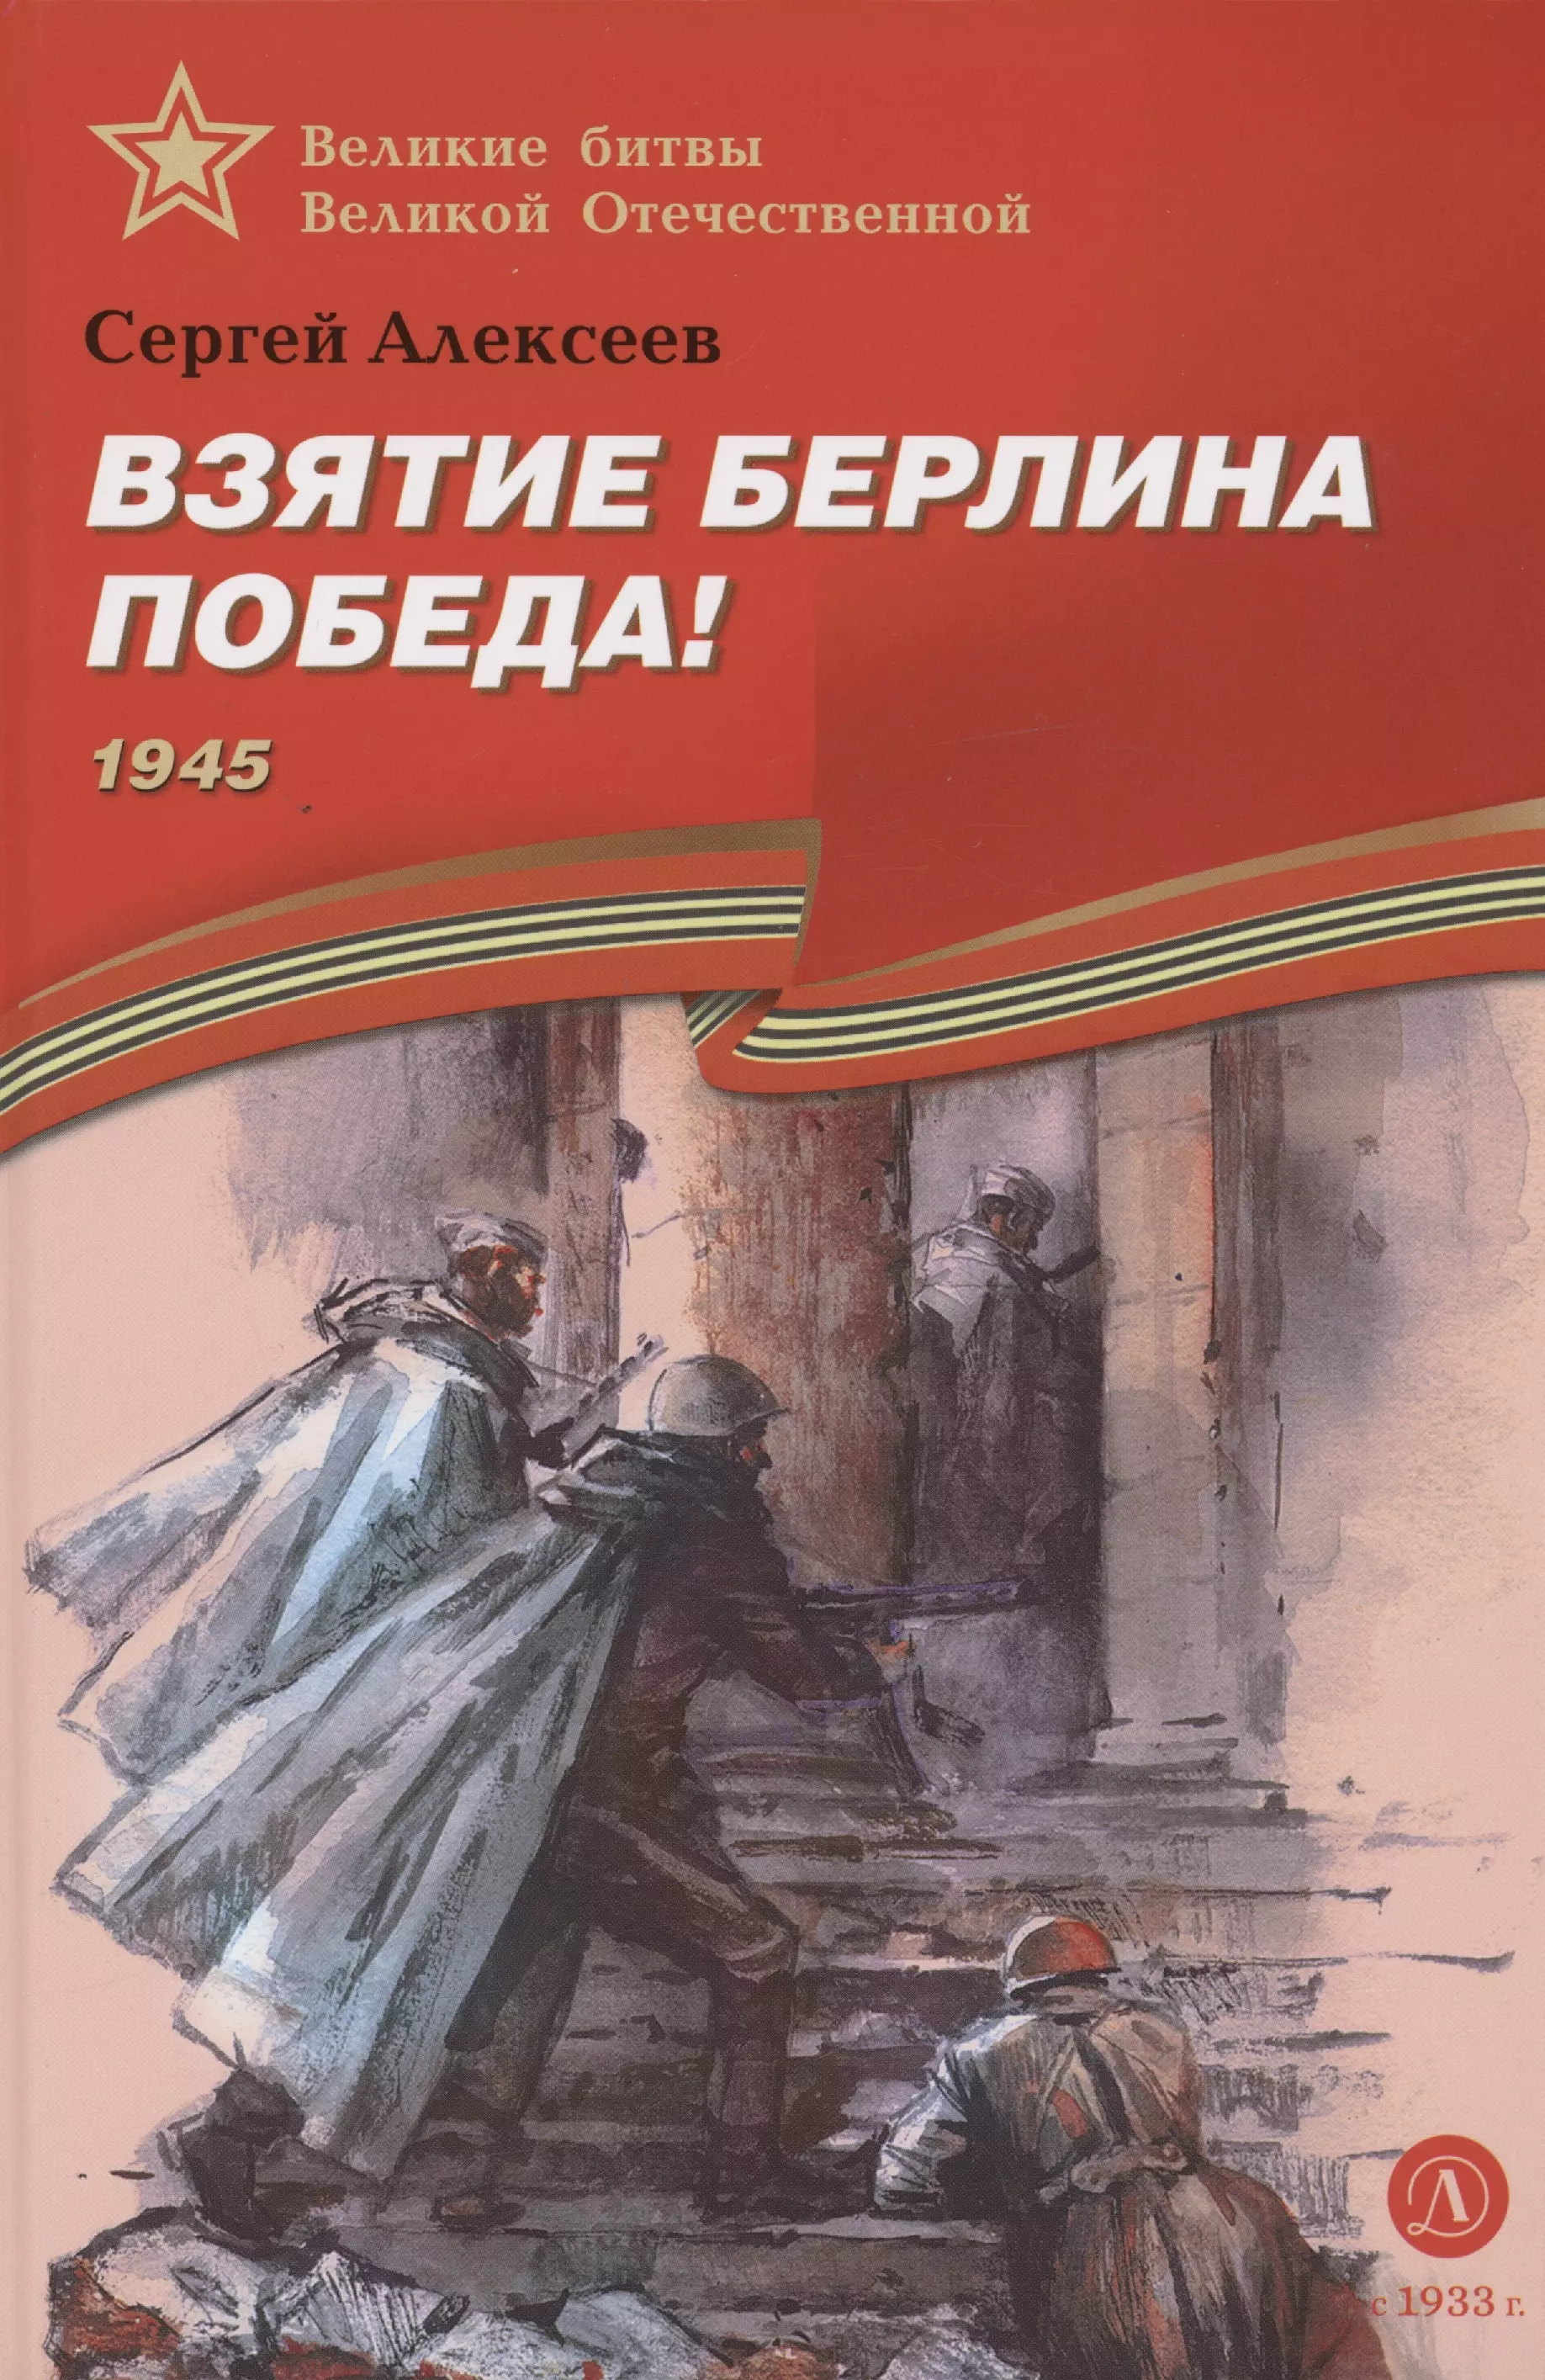 Алексеев Сергей Петрович Взятие Берлина, Победа! 1945